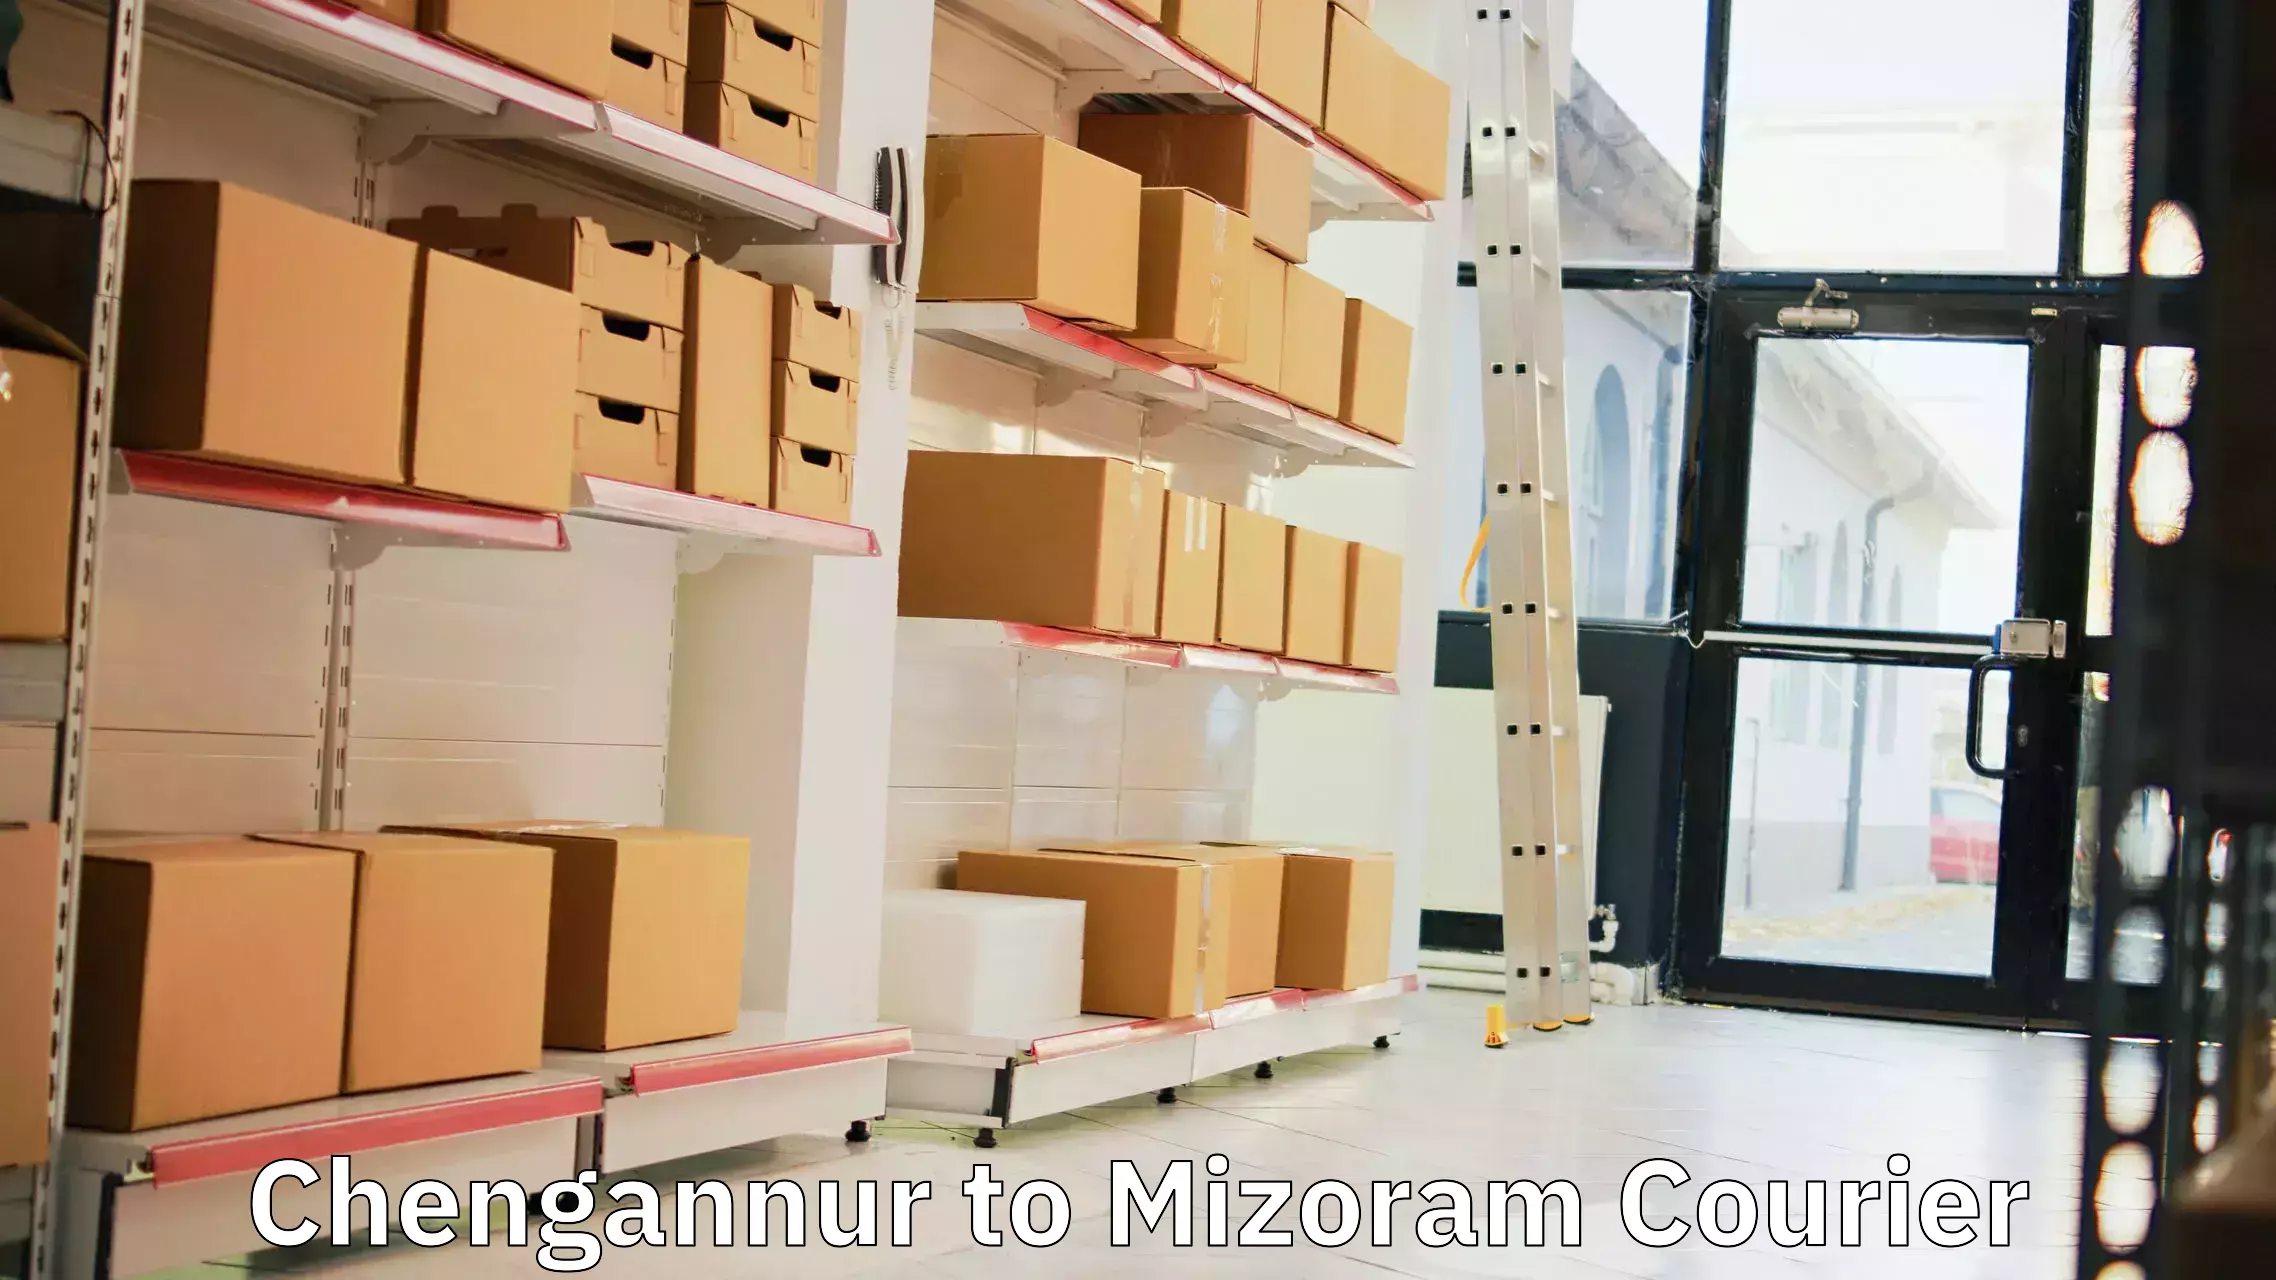 Shipping and handling Chengannur to Mizoram